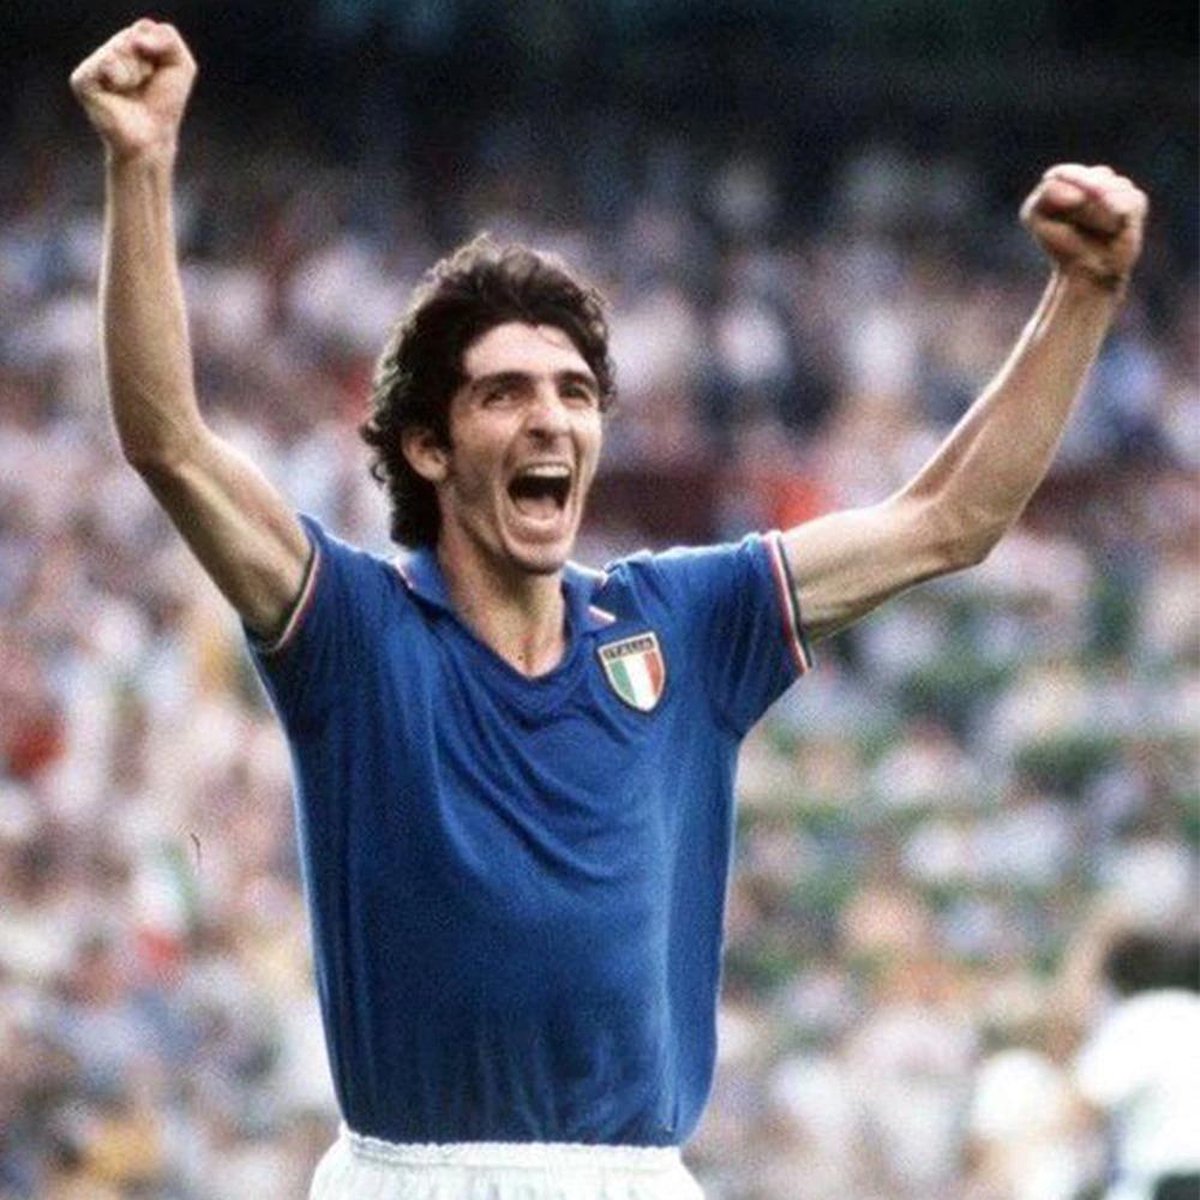 Camiseta Italia Paolo Rossi mundial 1982 jersey maglia (DHL delivery)